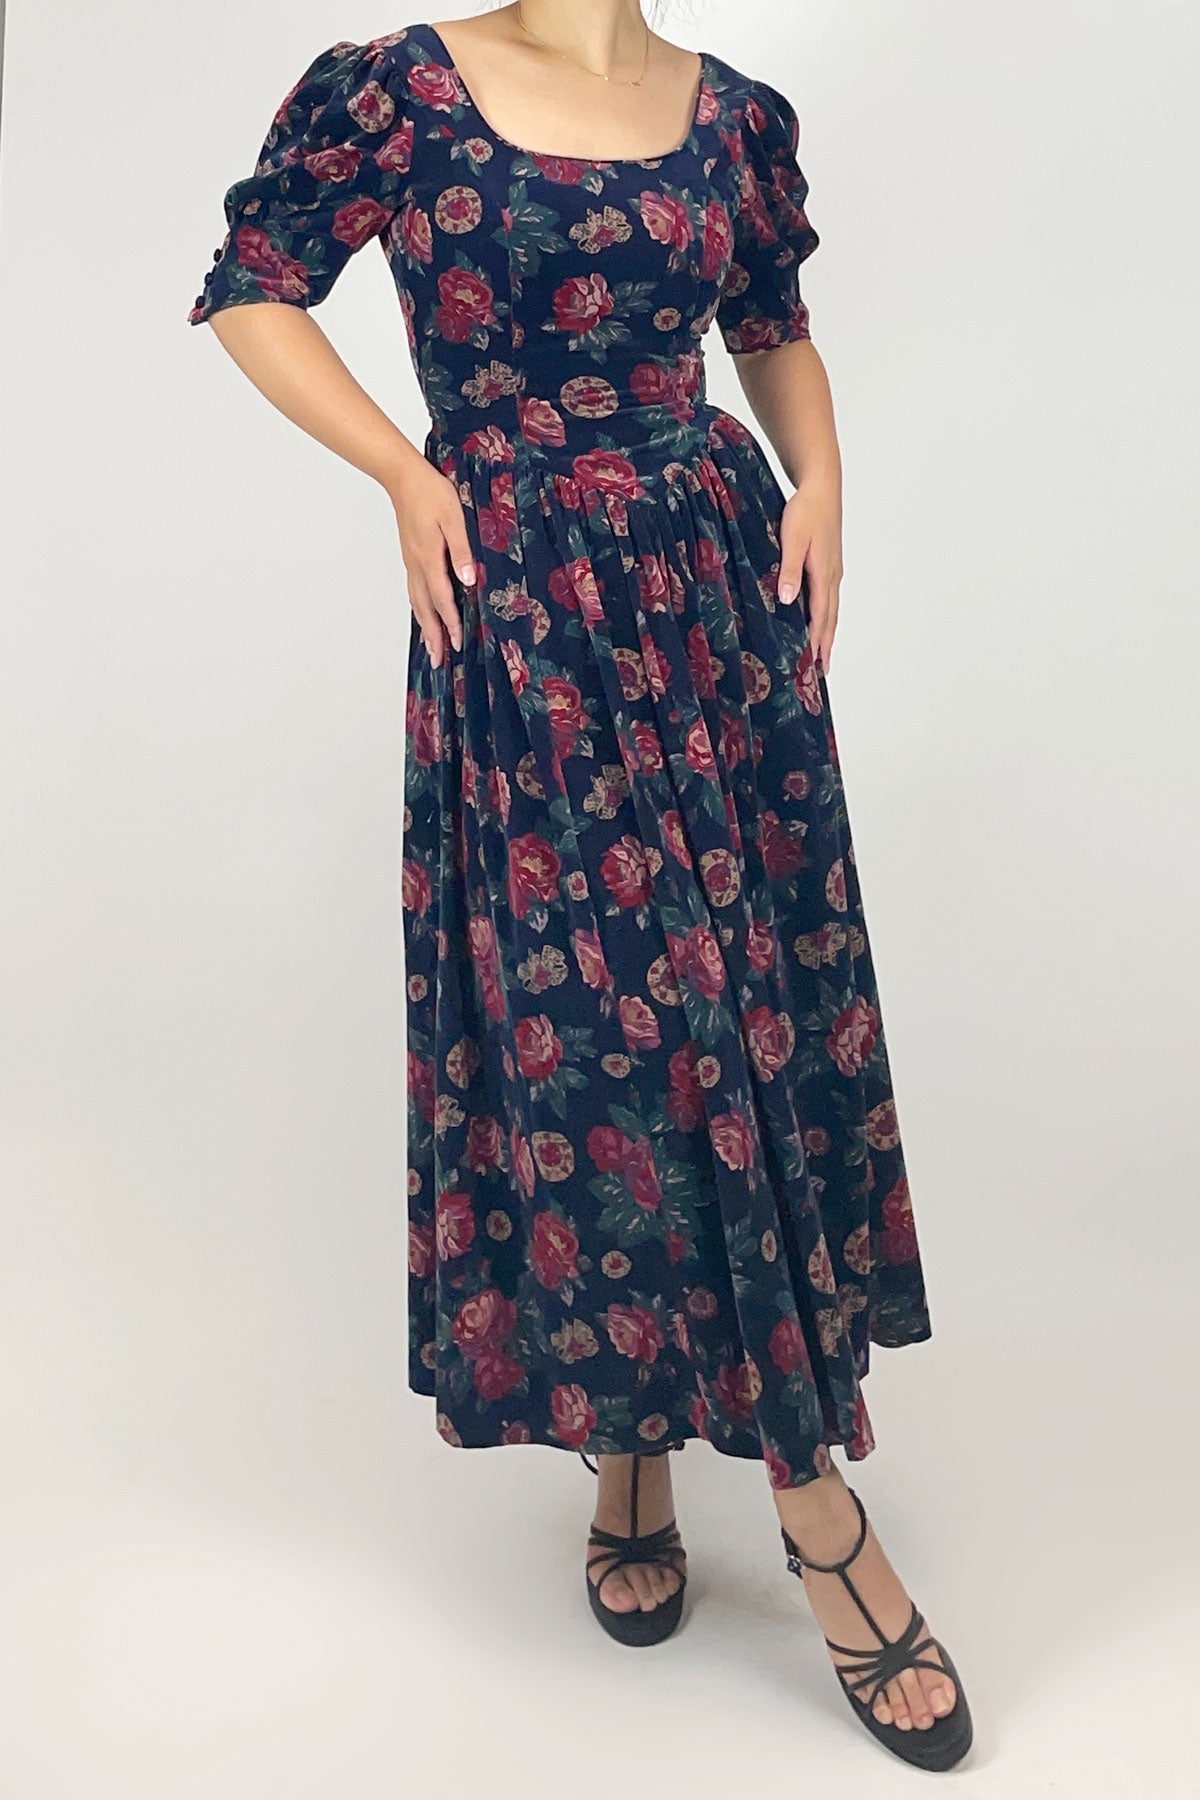 Laura Ashley Velvet Floral Dress / 6 (US) - Jade Vintage